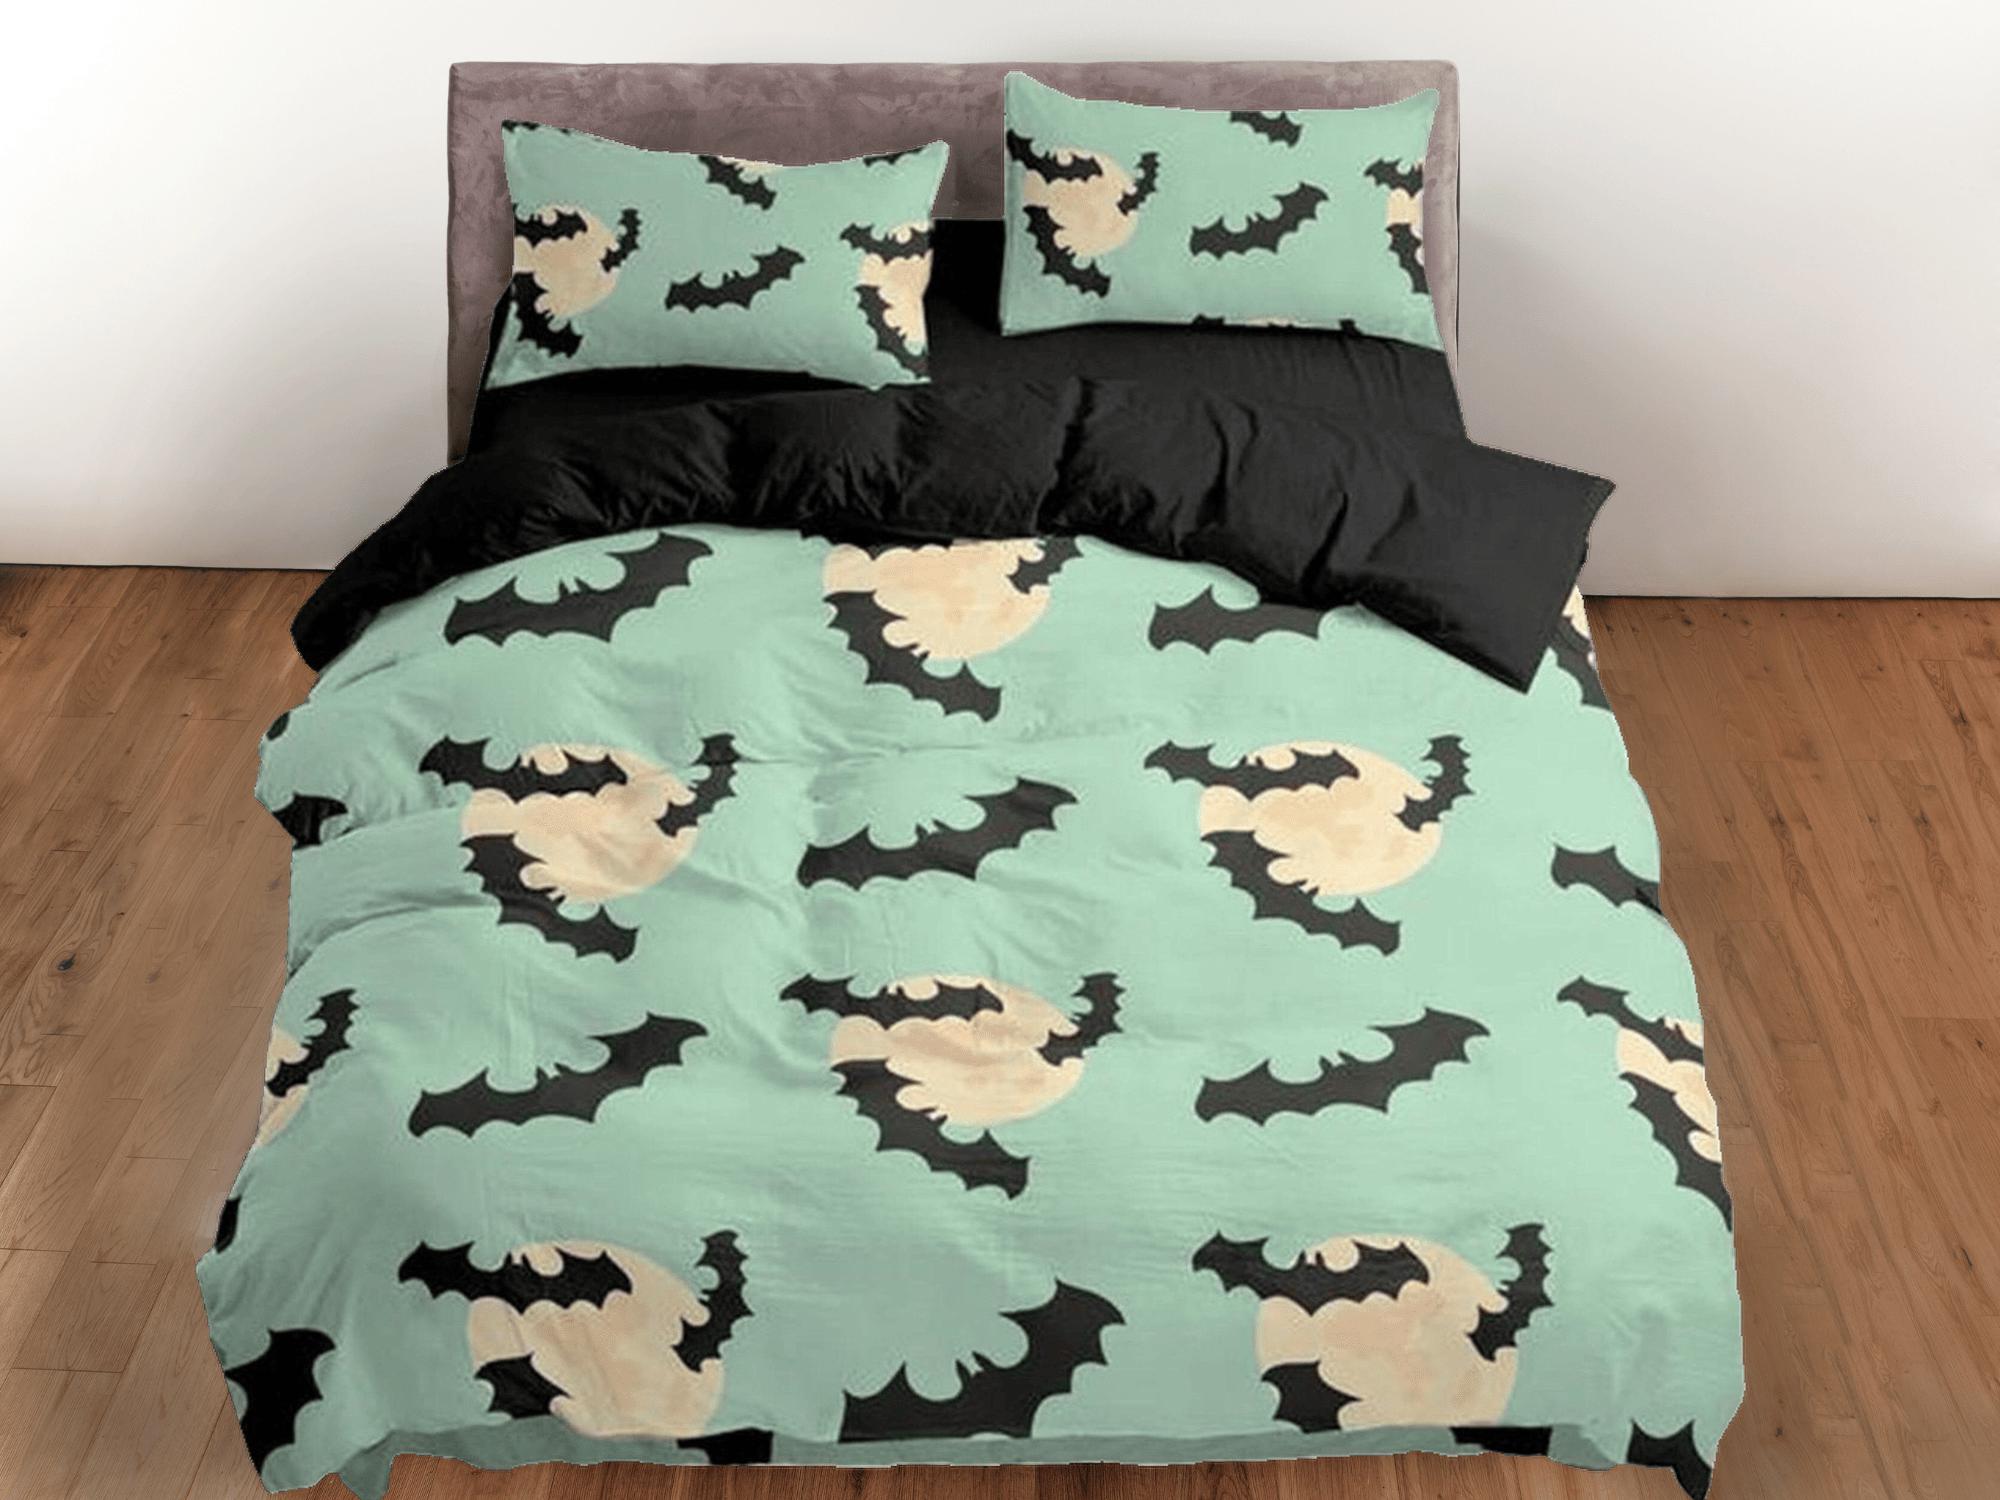 daintyduvet Mint green bats halloween full bedding & pillowcase, duvet cover set dorm bedding, halloween gift, nursery toddler bedding, 90s nostalgia